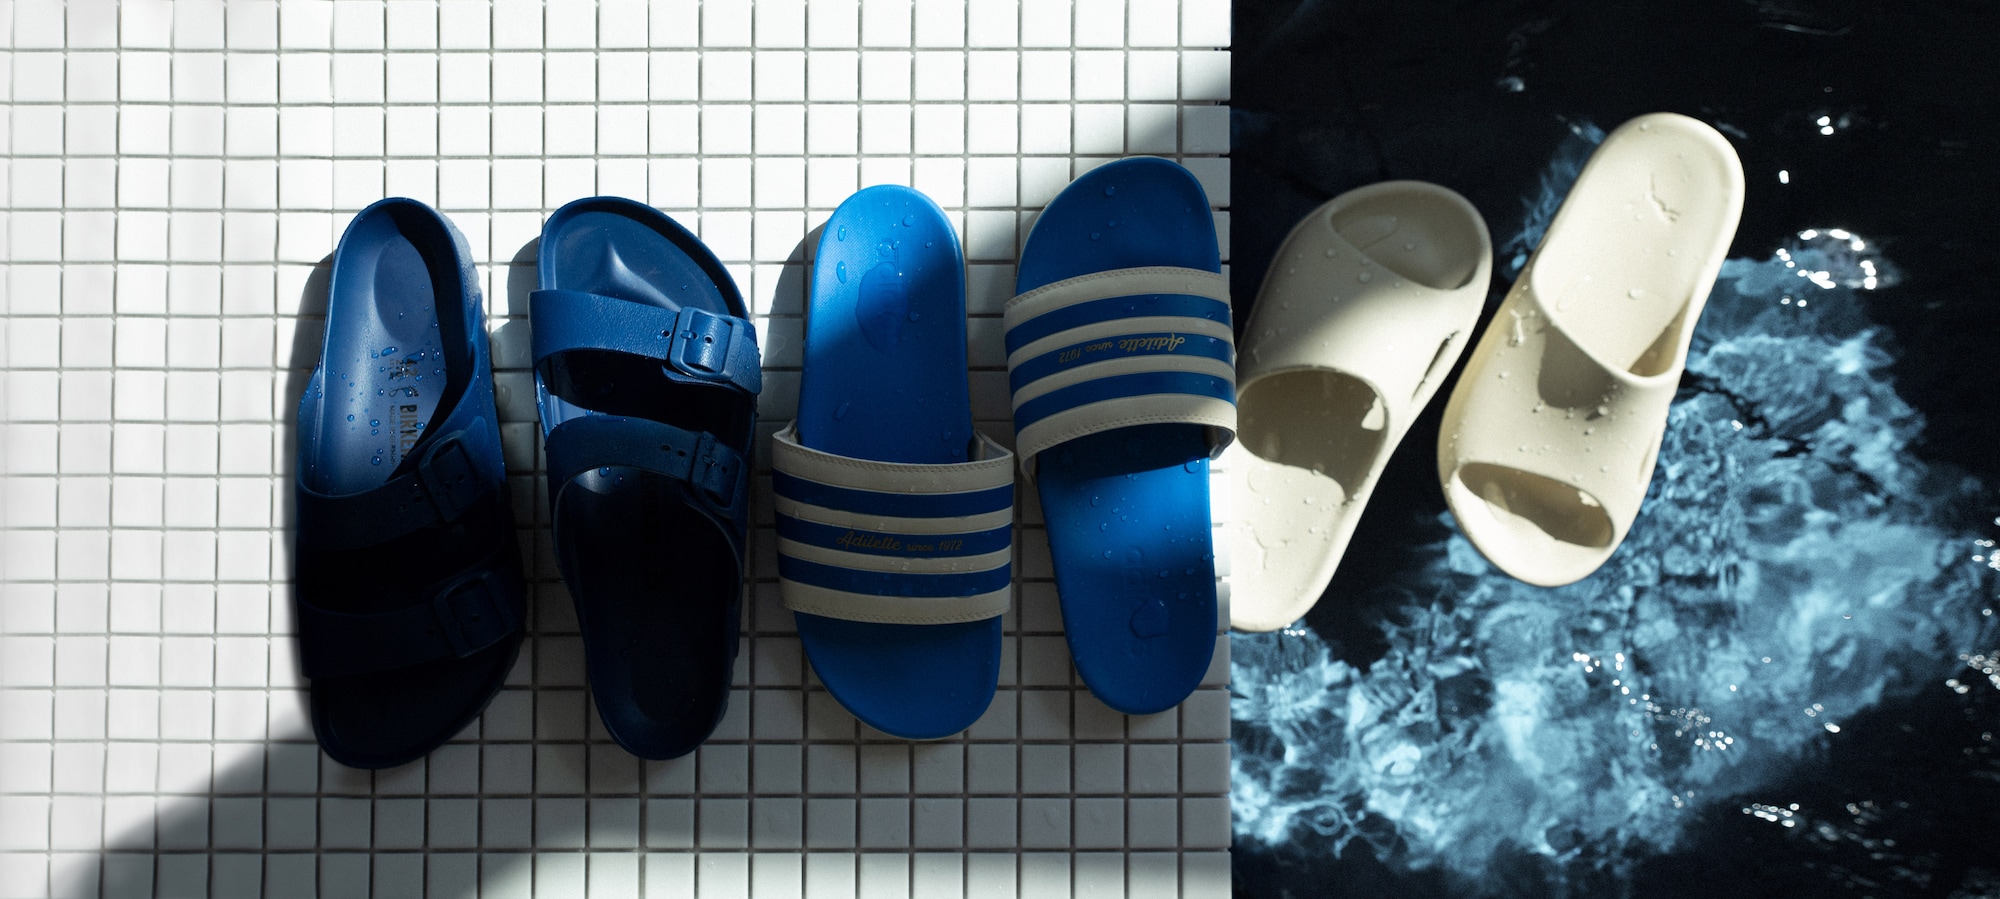 Sandalias, chanclas y otro calzado de verano Sandalias y chanclas de moda